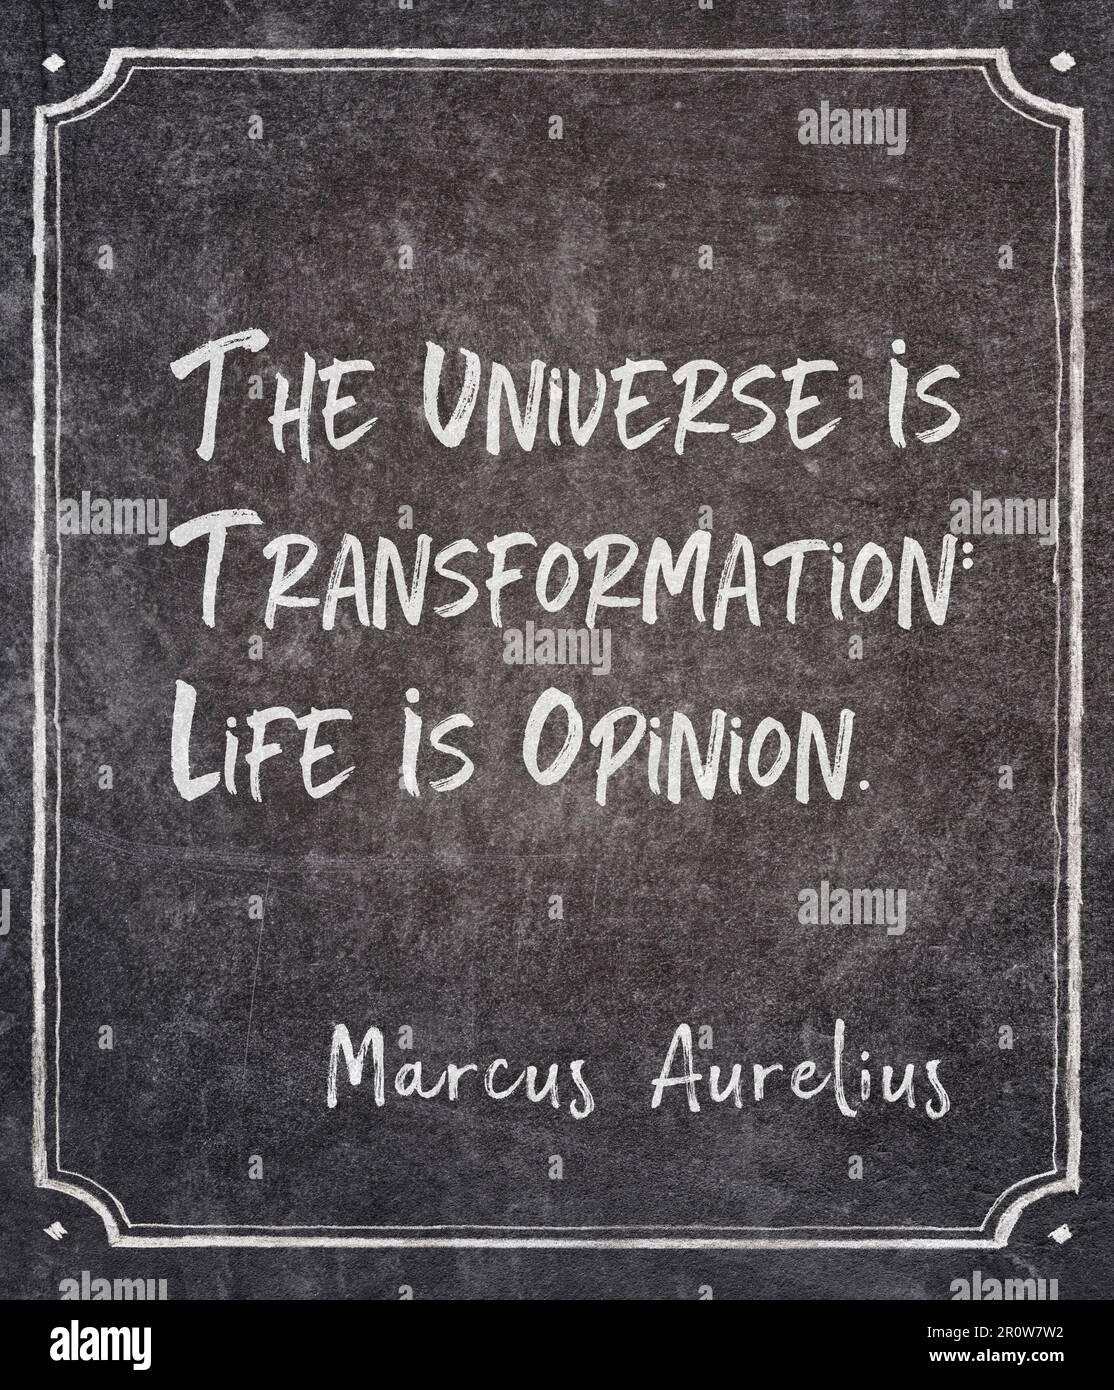 L'universo è trasformazione: La vita è opinione - antico imperatore romano e filosofo stoico Marcus Aurelius citazione scritta sulla lavagna incorniciata Foto Stock